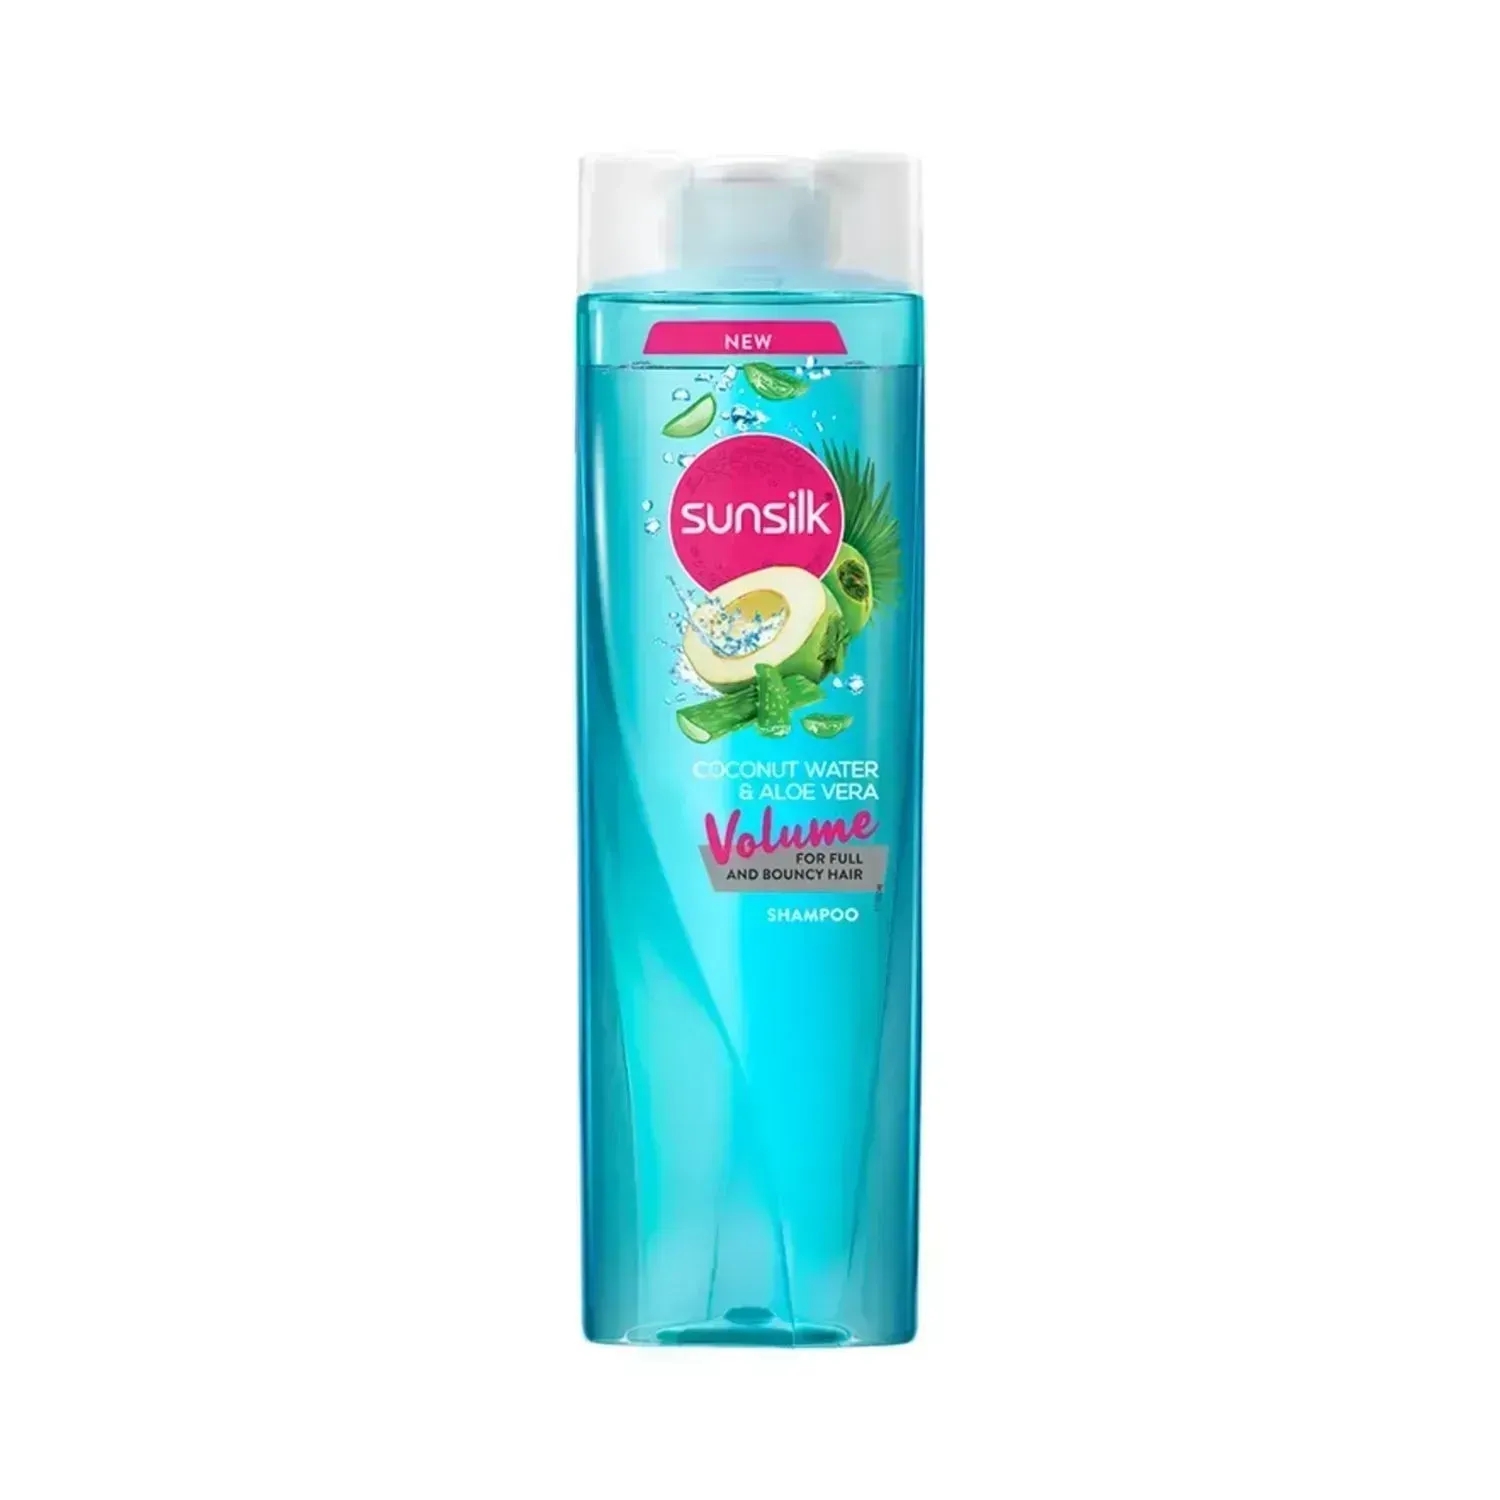 Sunsilk | Sunsilk Coconut Water & Aloe Vera Volume Hair Shampoo - (370ml)